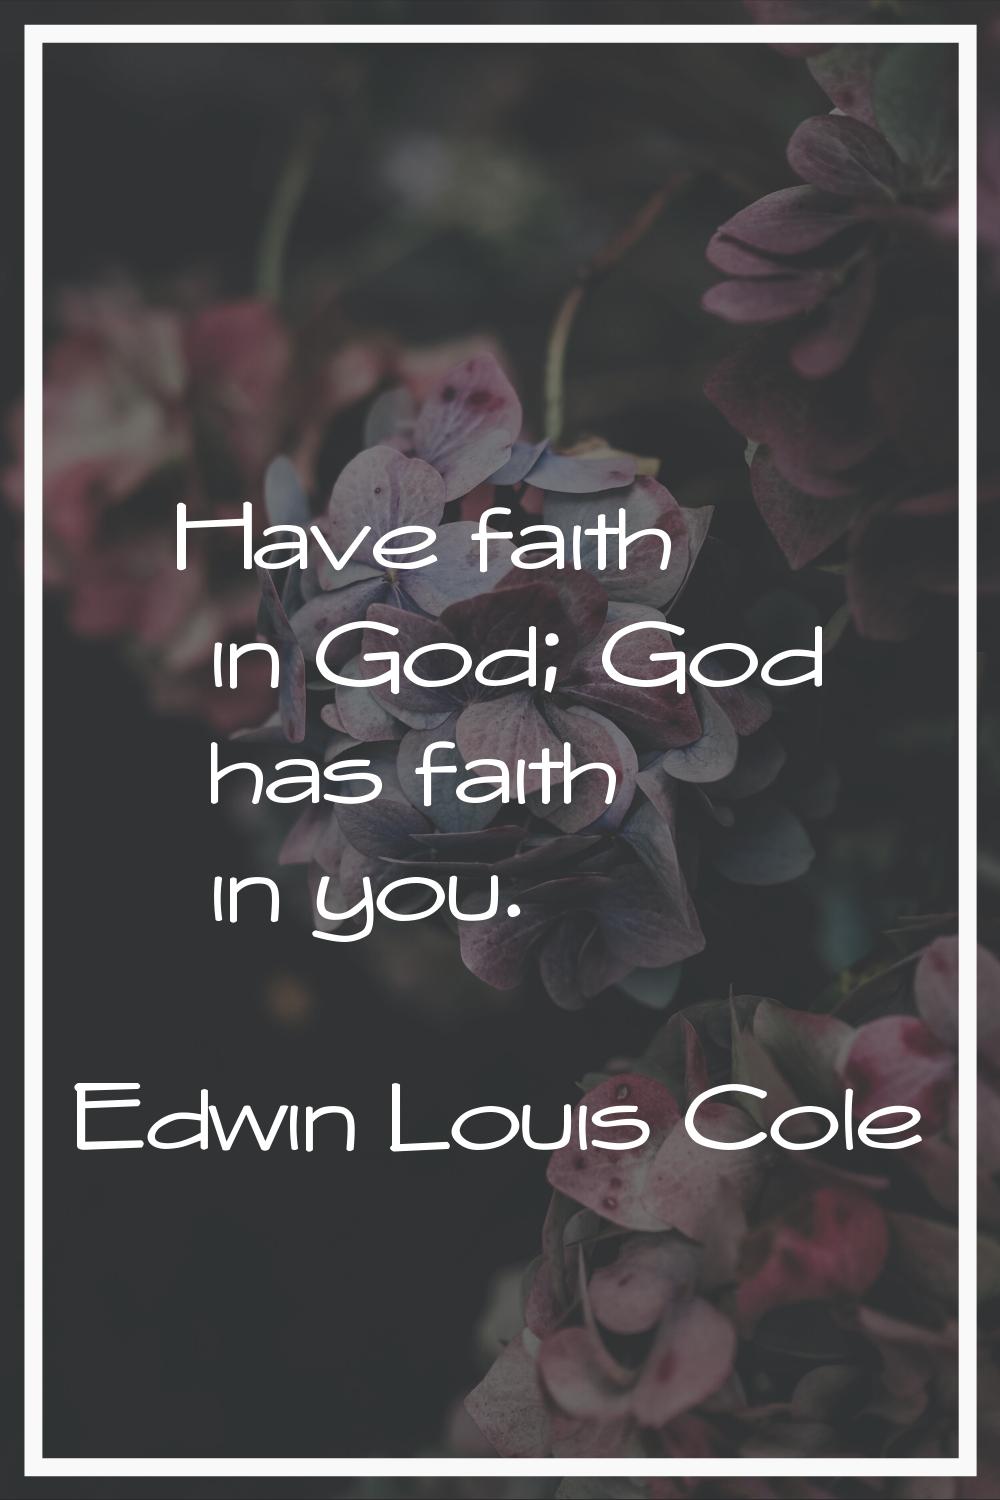 Have faith in God; God has faith in you.